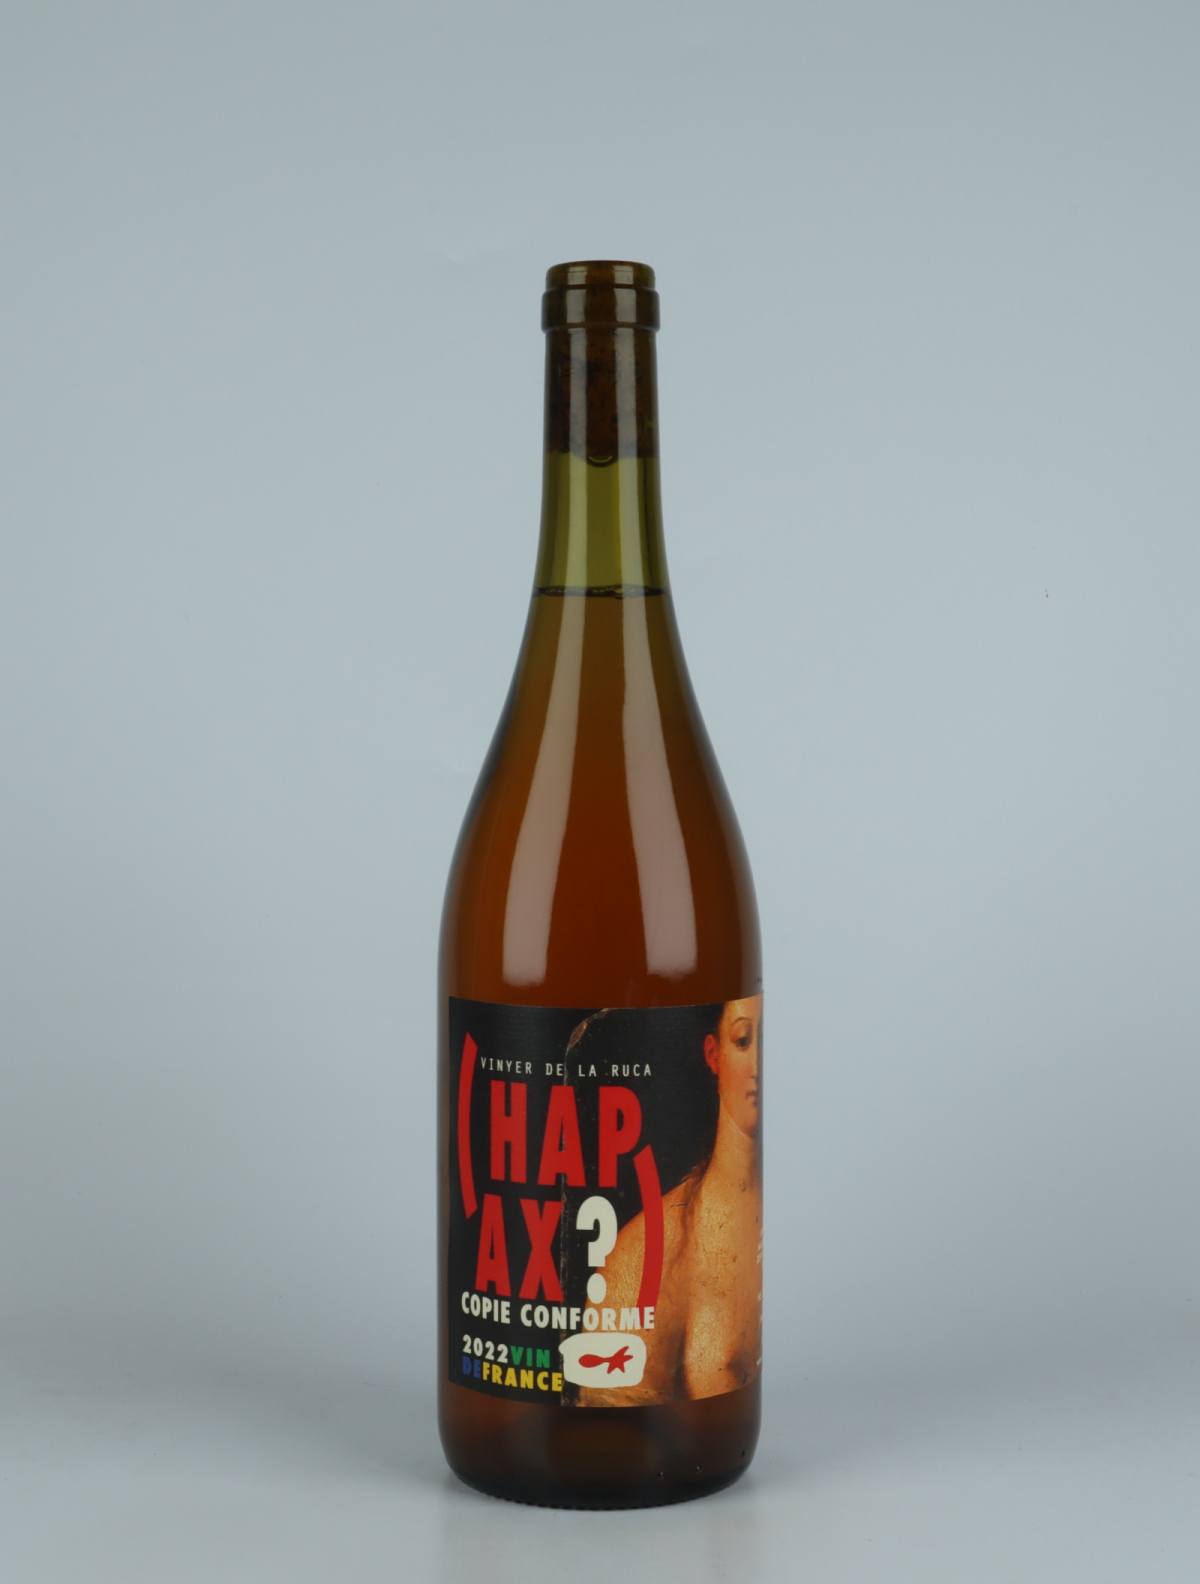 A bottle 2022 Hapax Copie Conforme Rosé from Vinyer de la Ruca, Rousillon in France